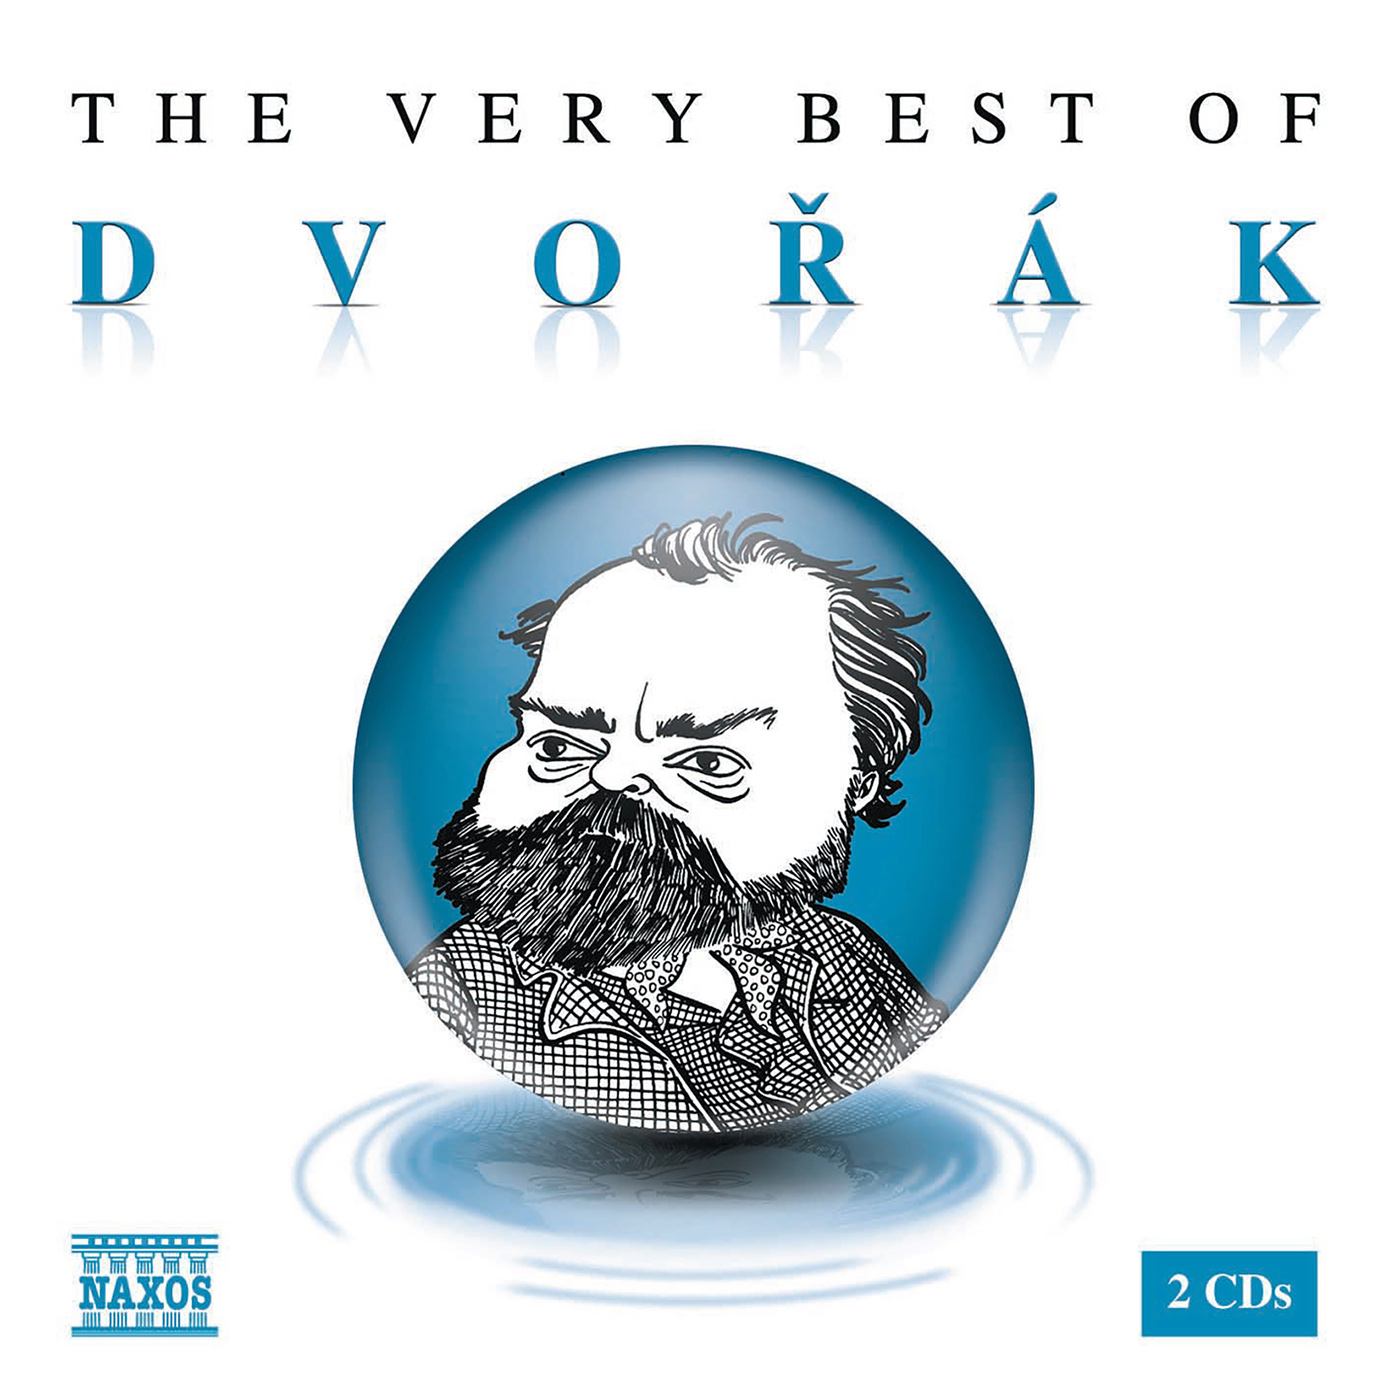 DVORAK (THE VERY BEST OF)